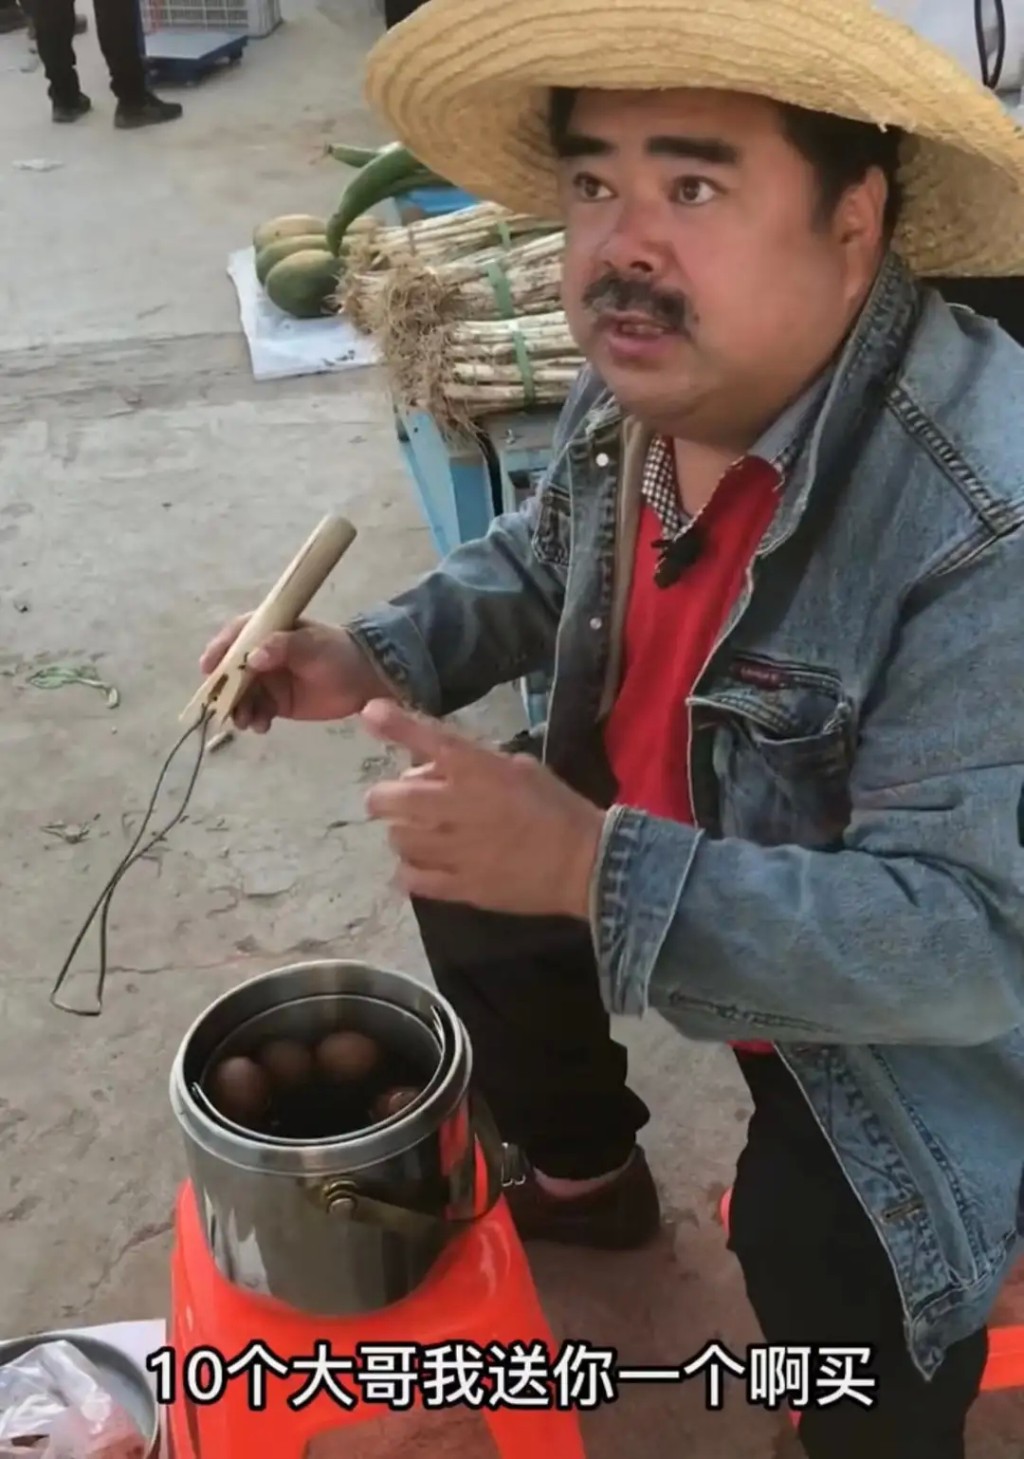 刘金在街市卖茶叶蛋。